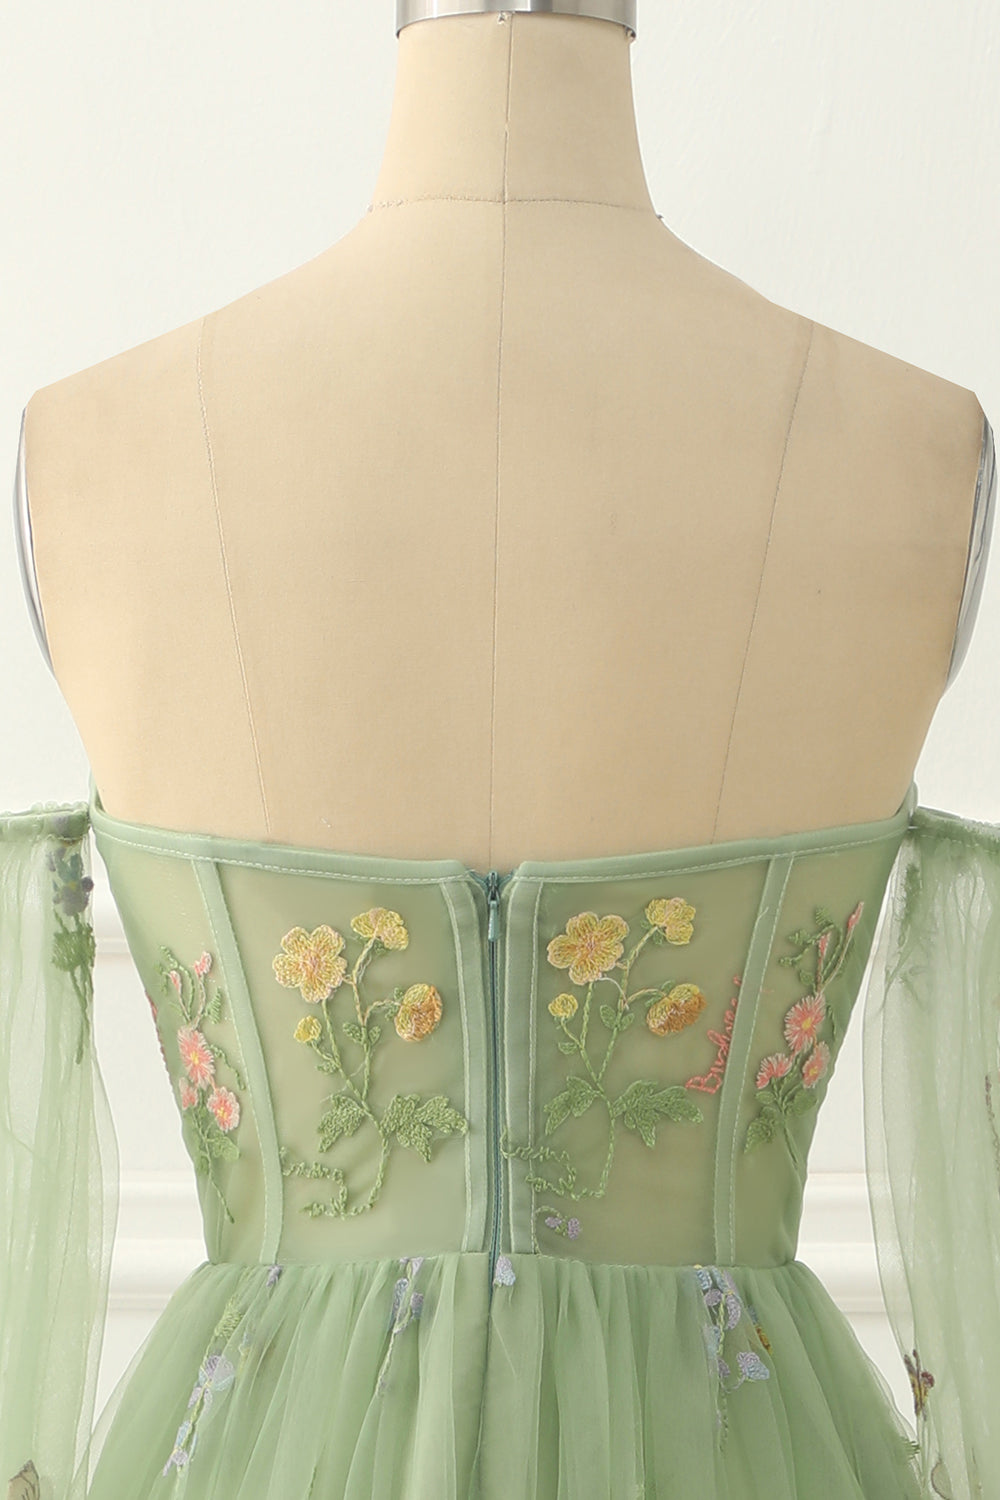 Groene tule van de schouder A-lijn prom-jurk met bloemen borduurwerk